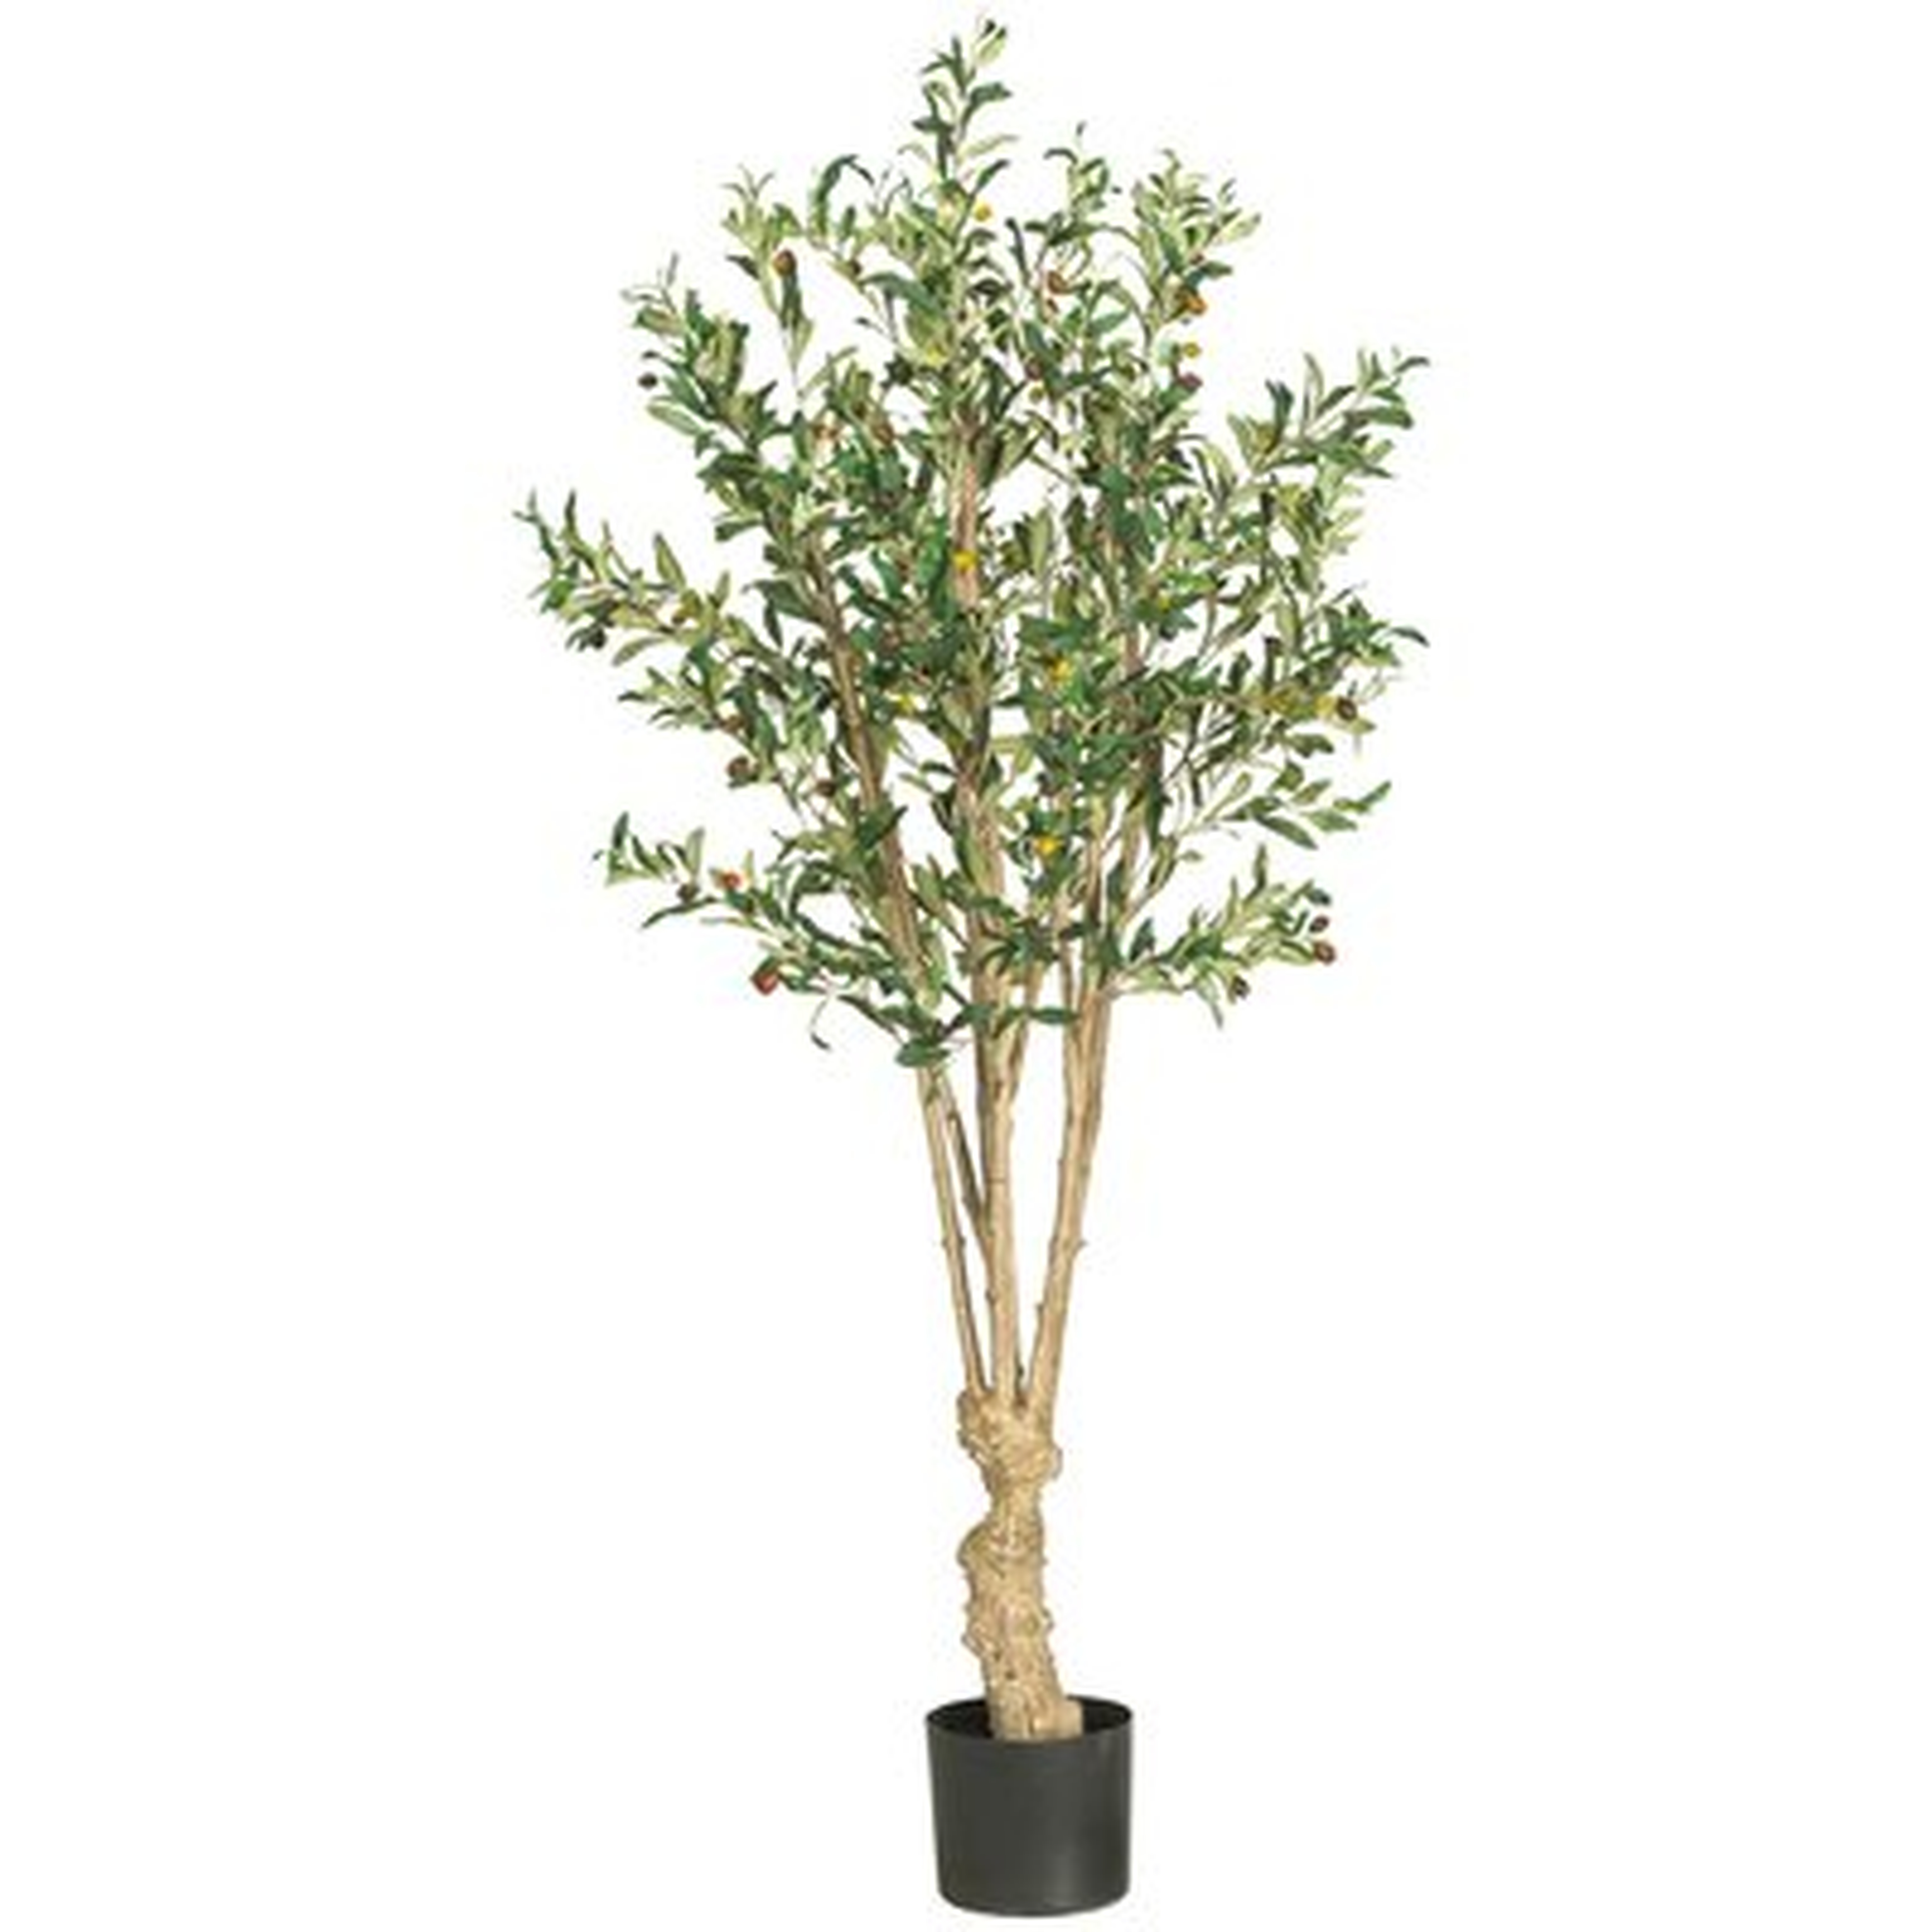 54" Artificial Olive Tree in Pot - Wayfair